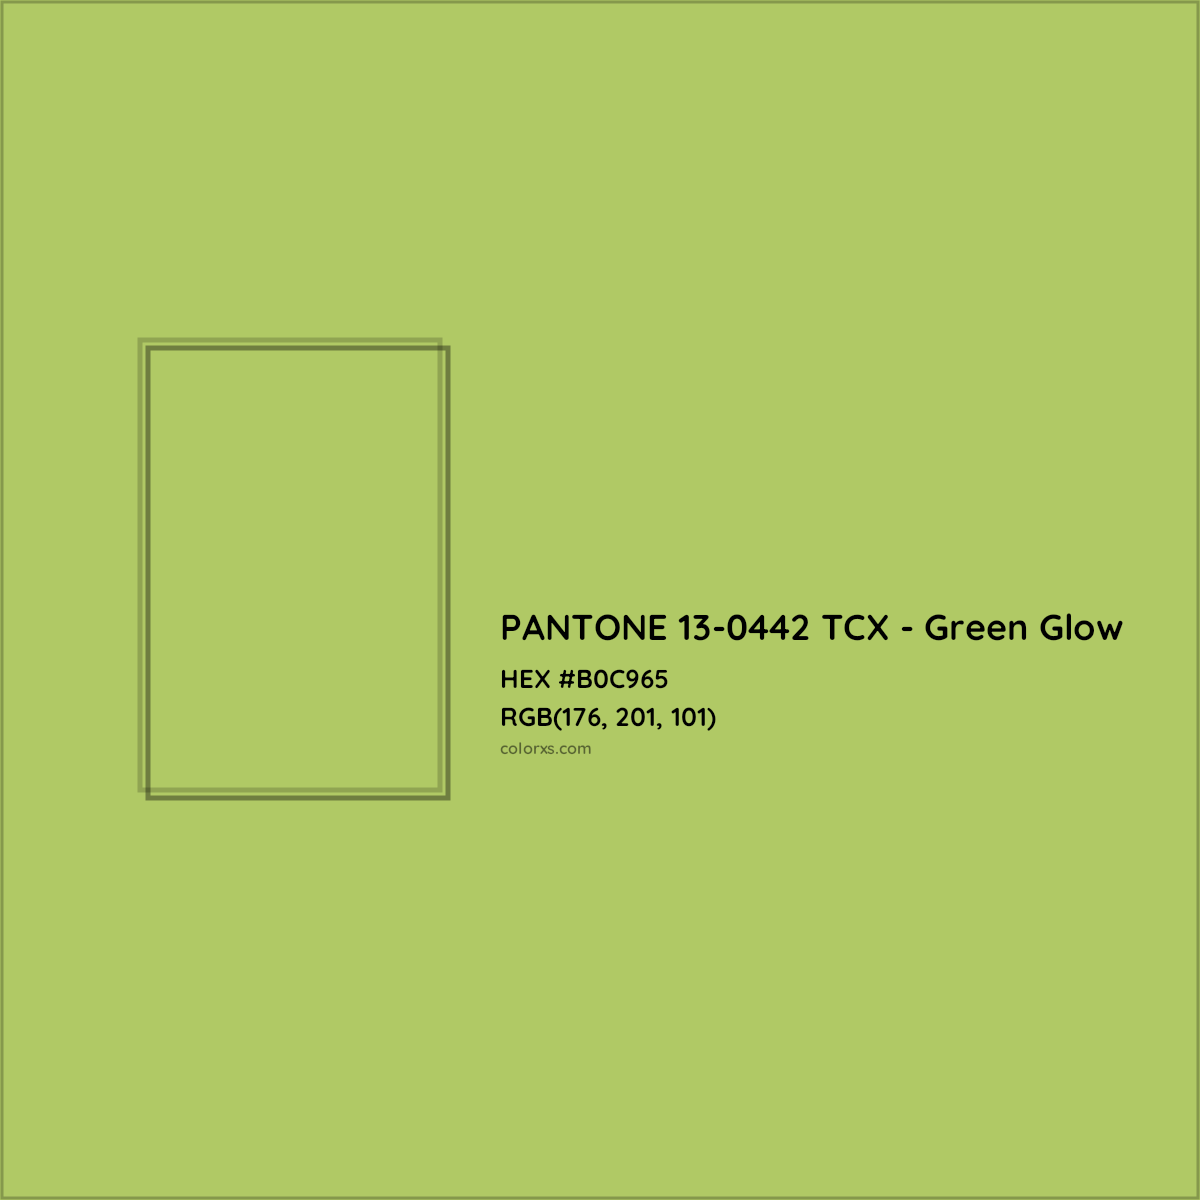 HEX #B0C965 PANTONE 13-0442 TCX - Green Glow CMS Pantone TCX - Color Code